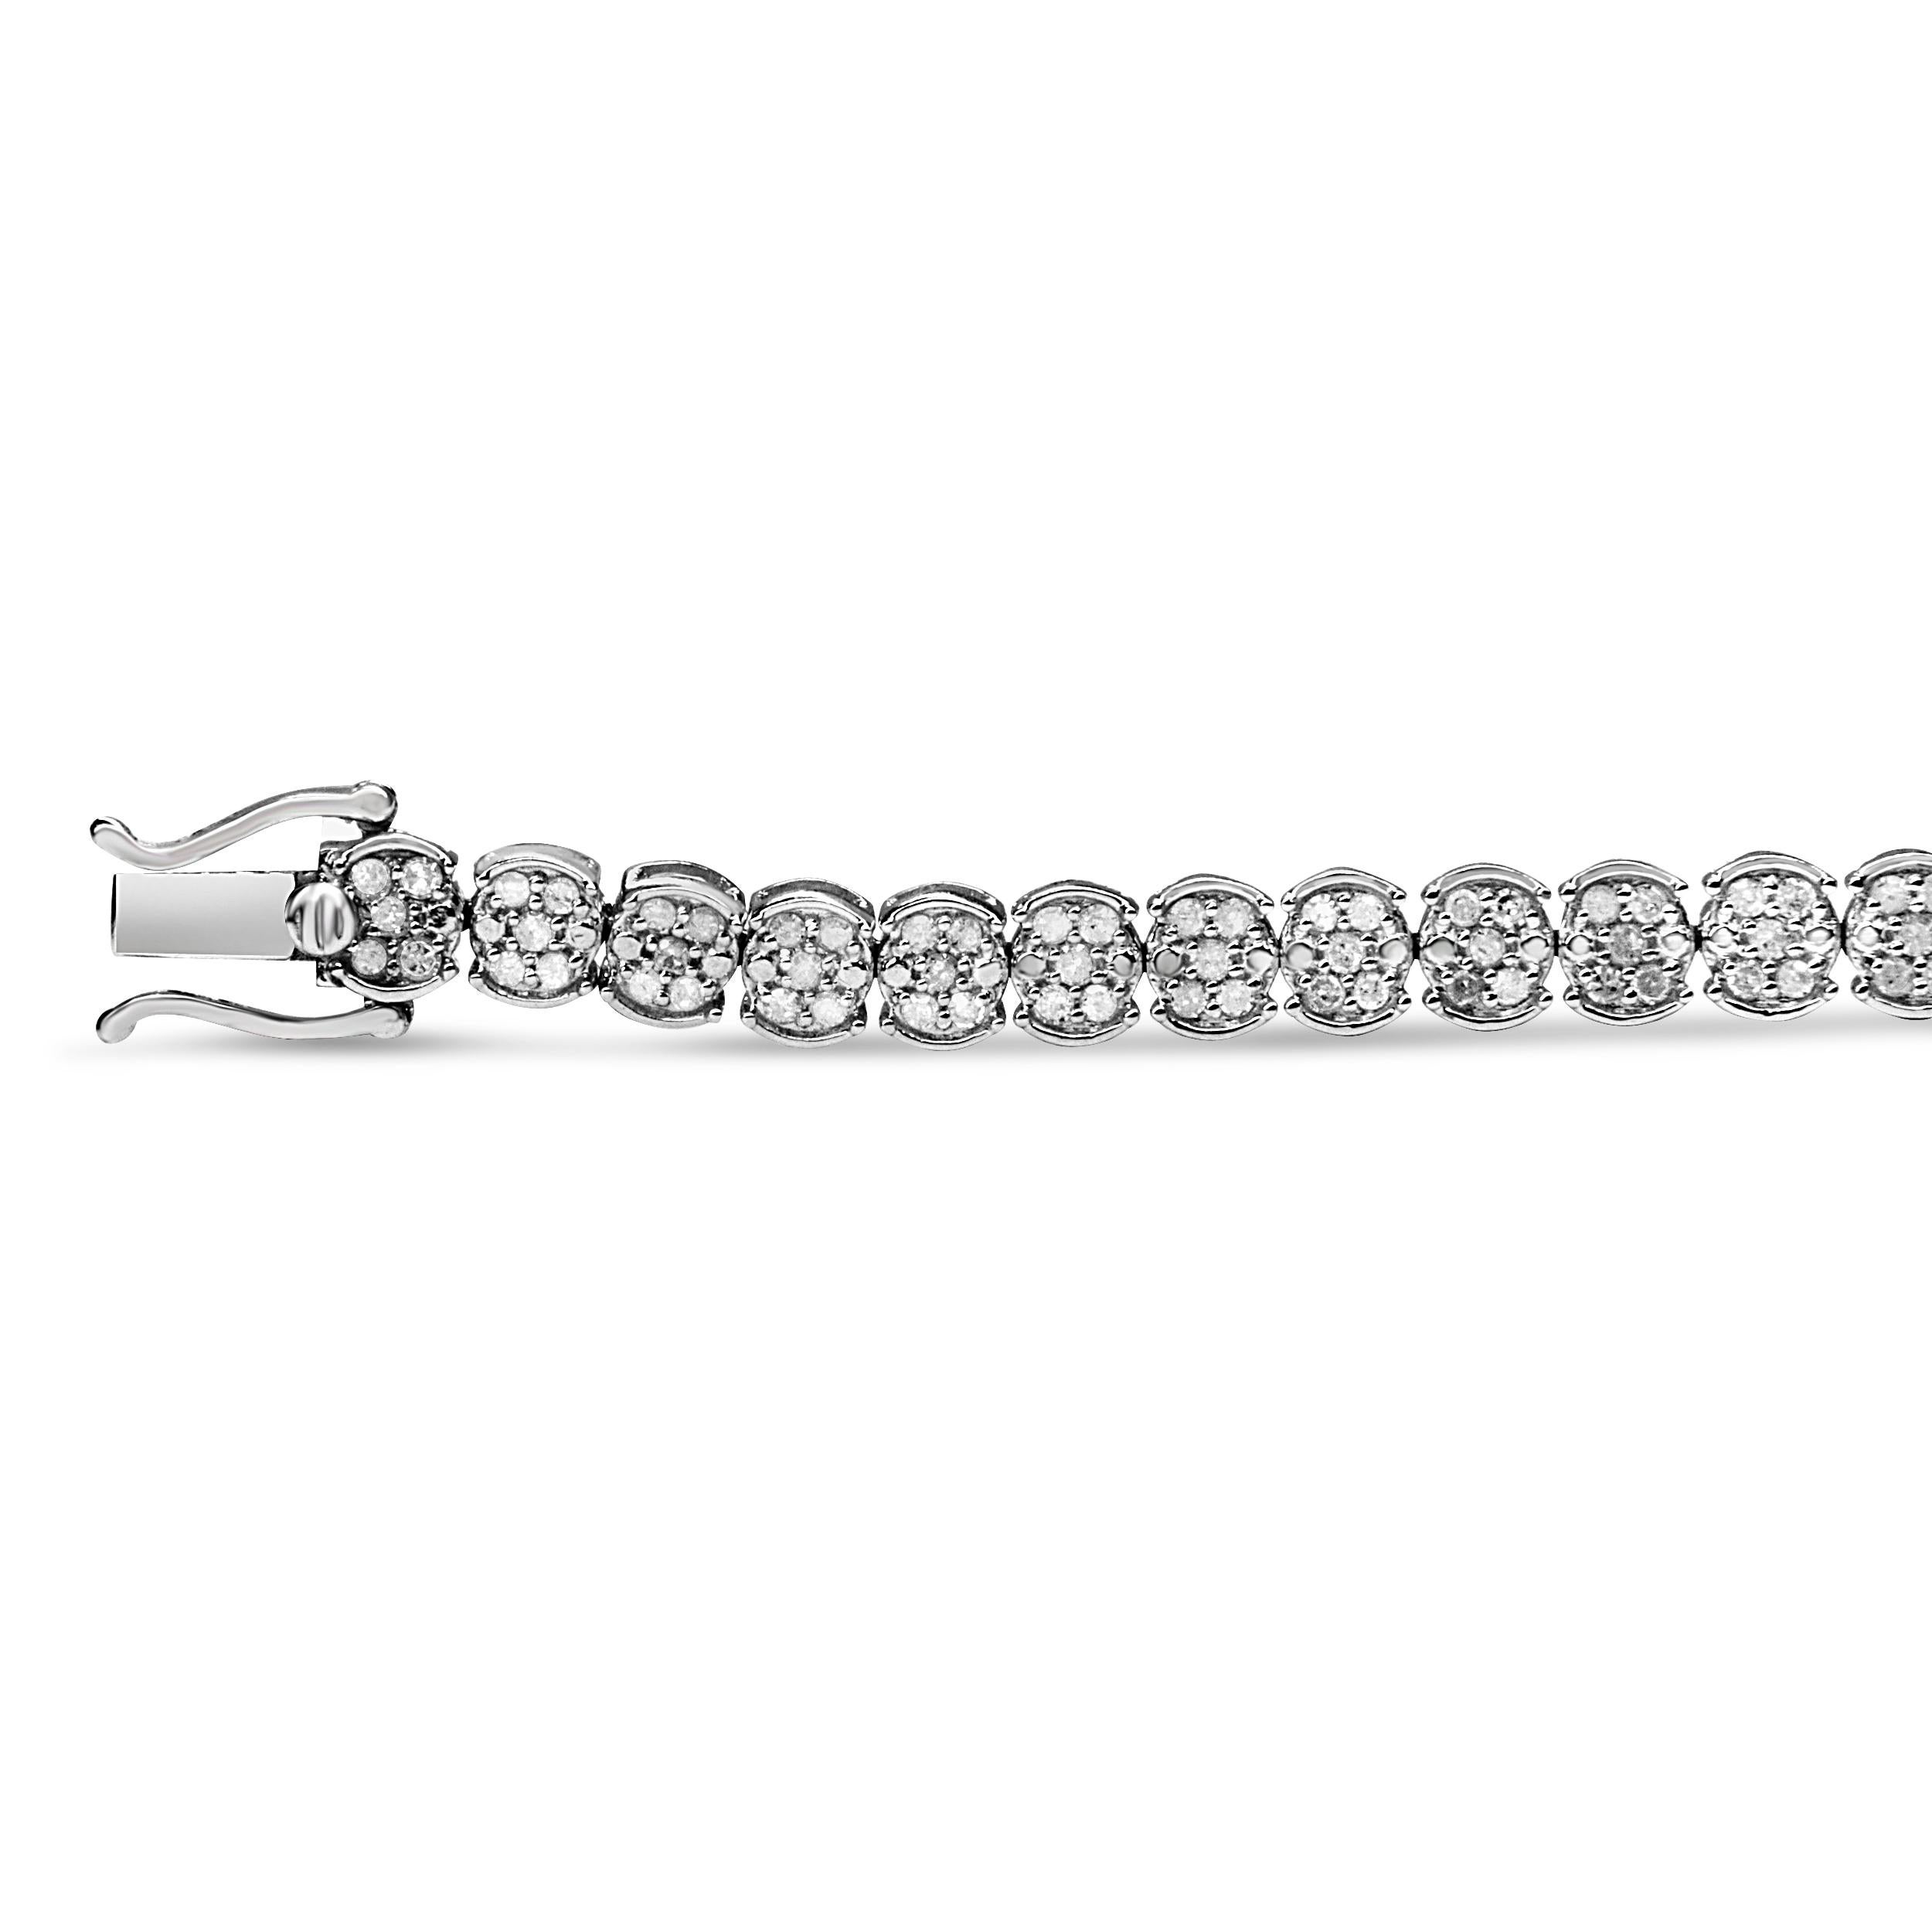 Eine funkelnde Verzauberung aus Diamanten sorgt für glitzernde Schönheit in diesem Gliederarmband mit Cluster. Dieses Armband strahlt modernen Glamour aus. Es ist perfekt verarbeitet mit runden Diamanten in Zackenfassung, umhüllt von feinem 925er